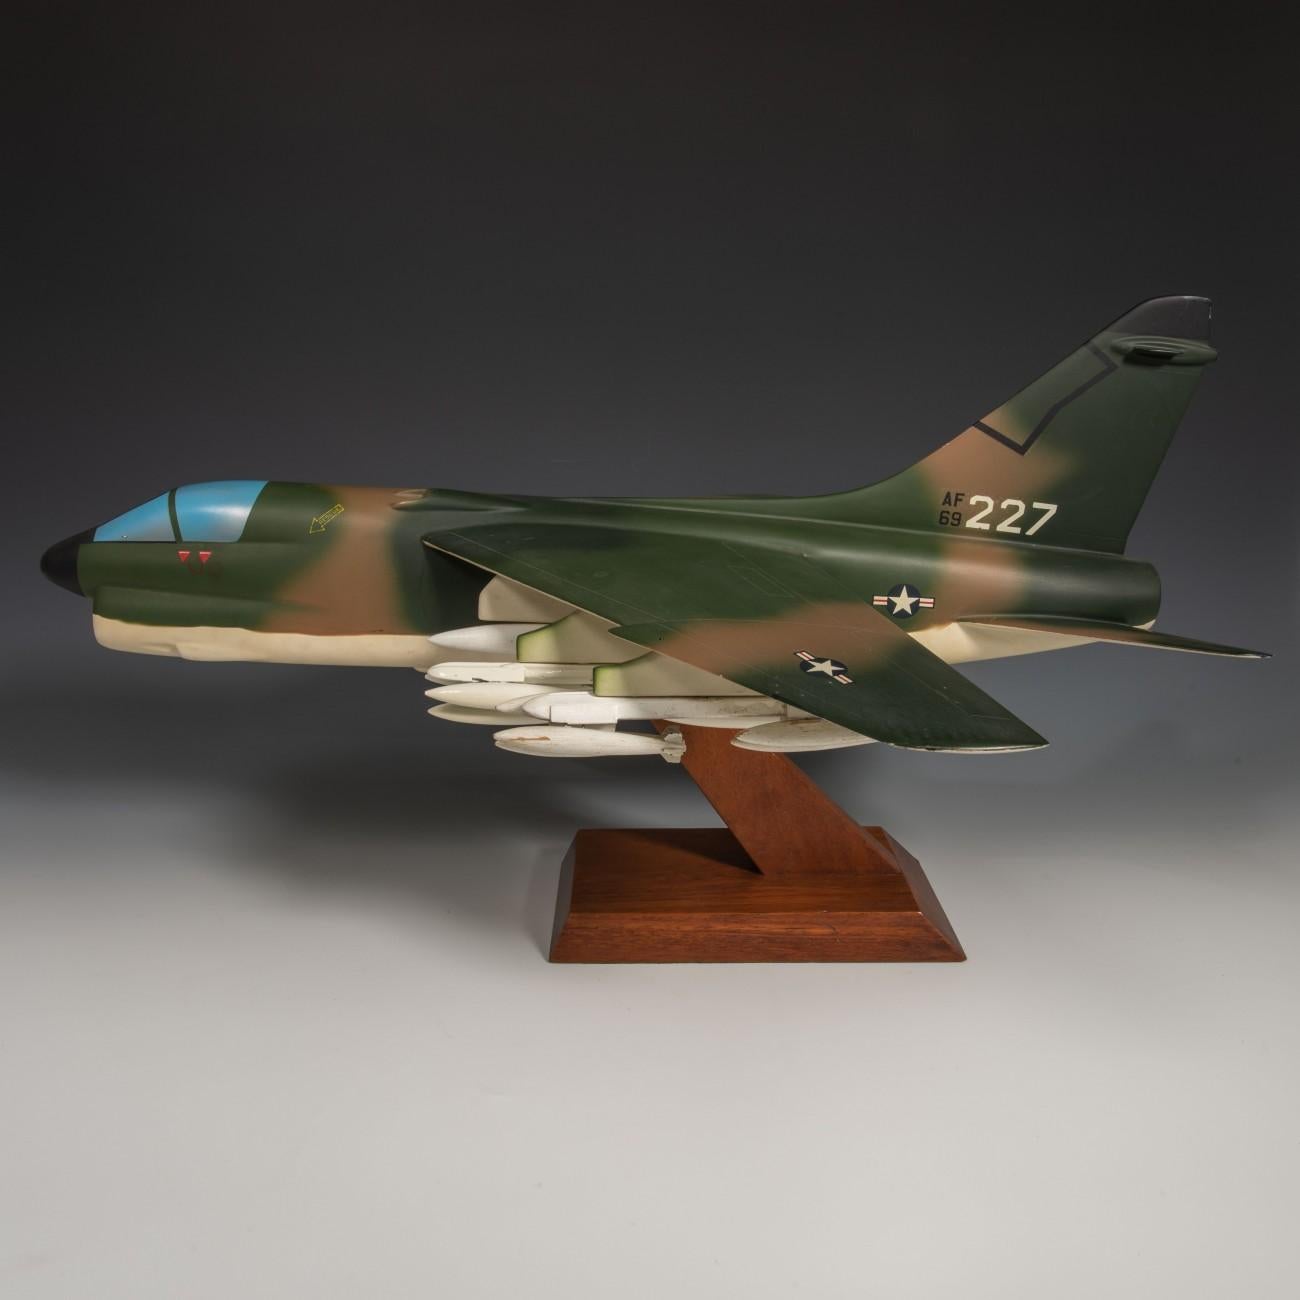 Exceptionnelle maquette militaire en aluminium peint et bois de l'avion de chasse LTV ( Ling-Temco-Vought) A-7 Corsair II. En livrée camouflage de l'armée de l'air américaine. Réalisé par un célèbre maquettiste néerlandais, Maarten Matthijs Verkuyl,